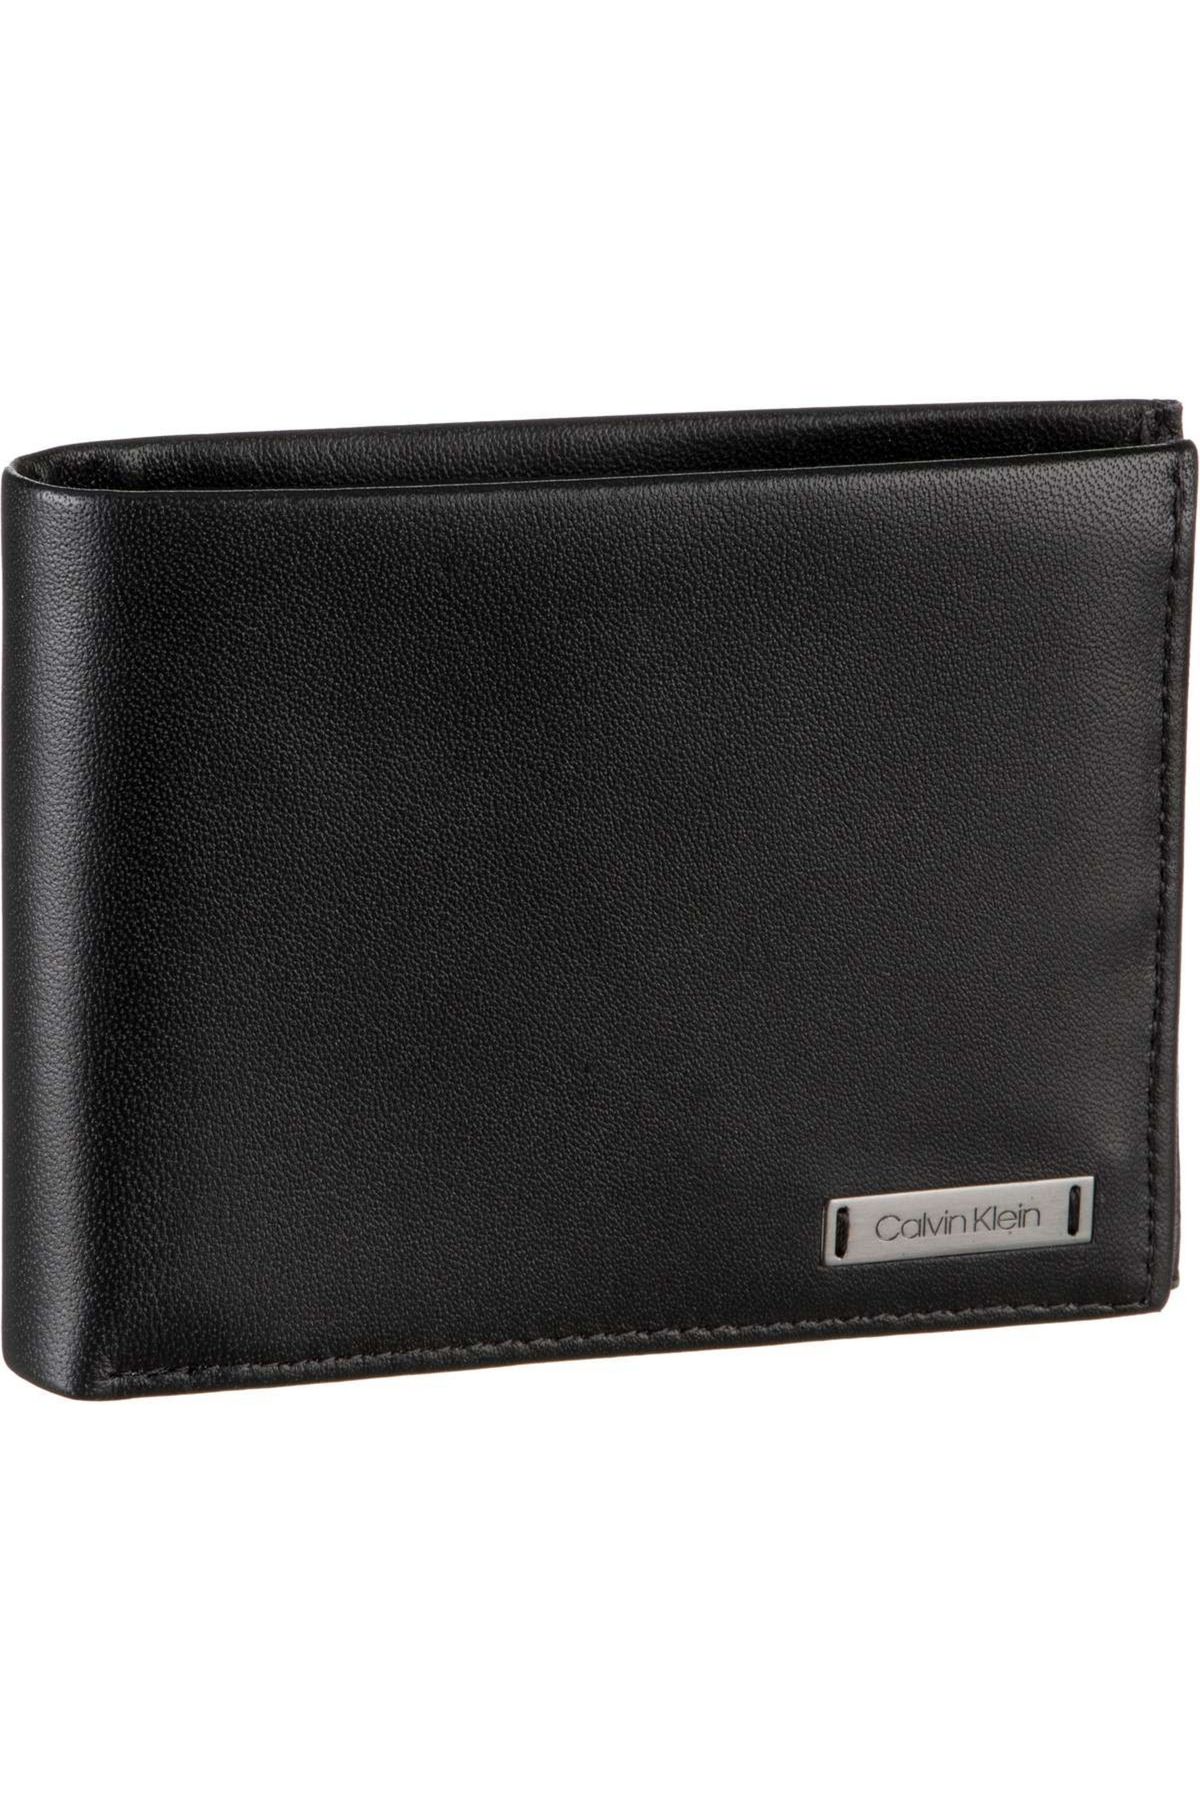 Trendyol Plaque Geldbörse 10CC Klein - Calvin Coin Smooth Wallet With